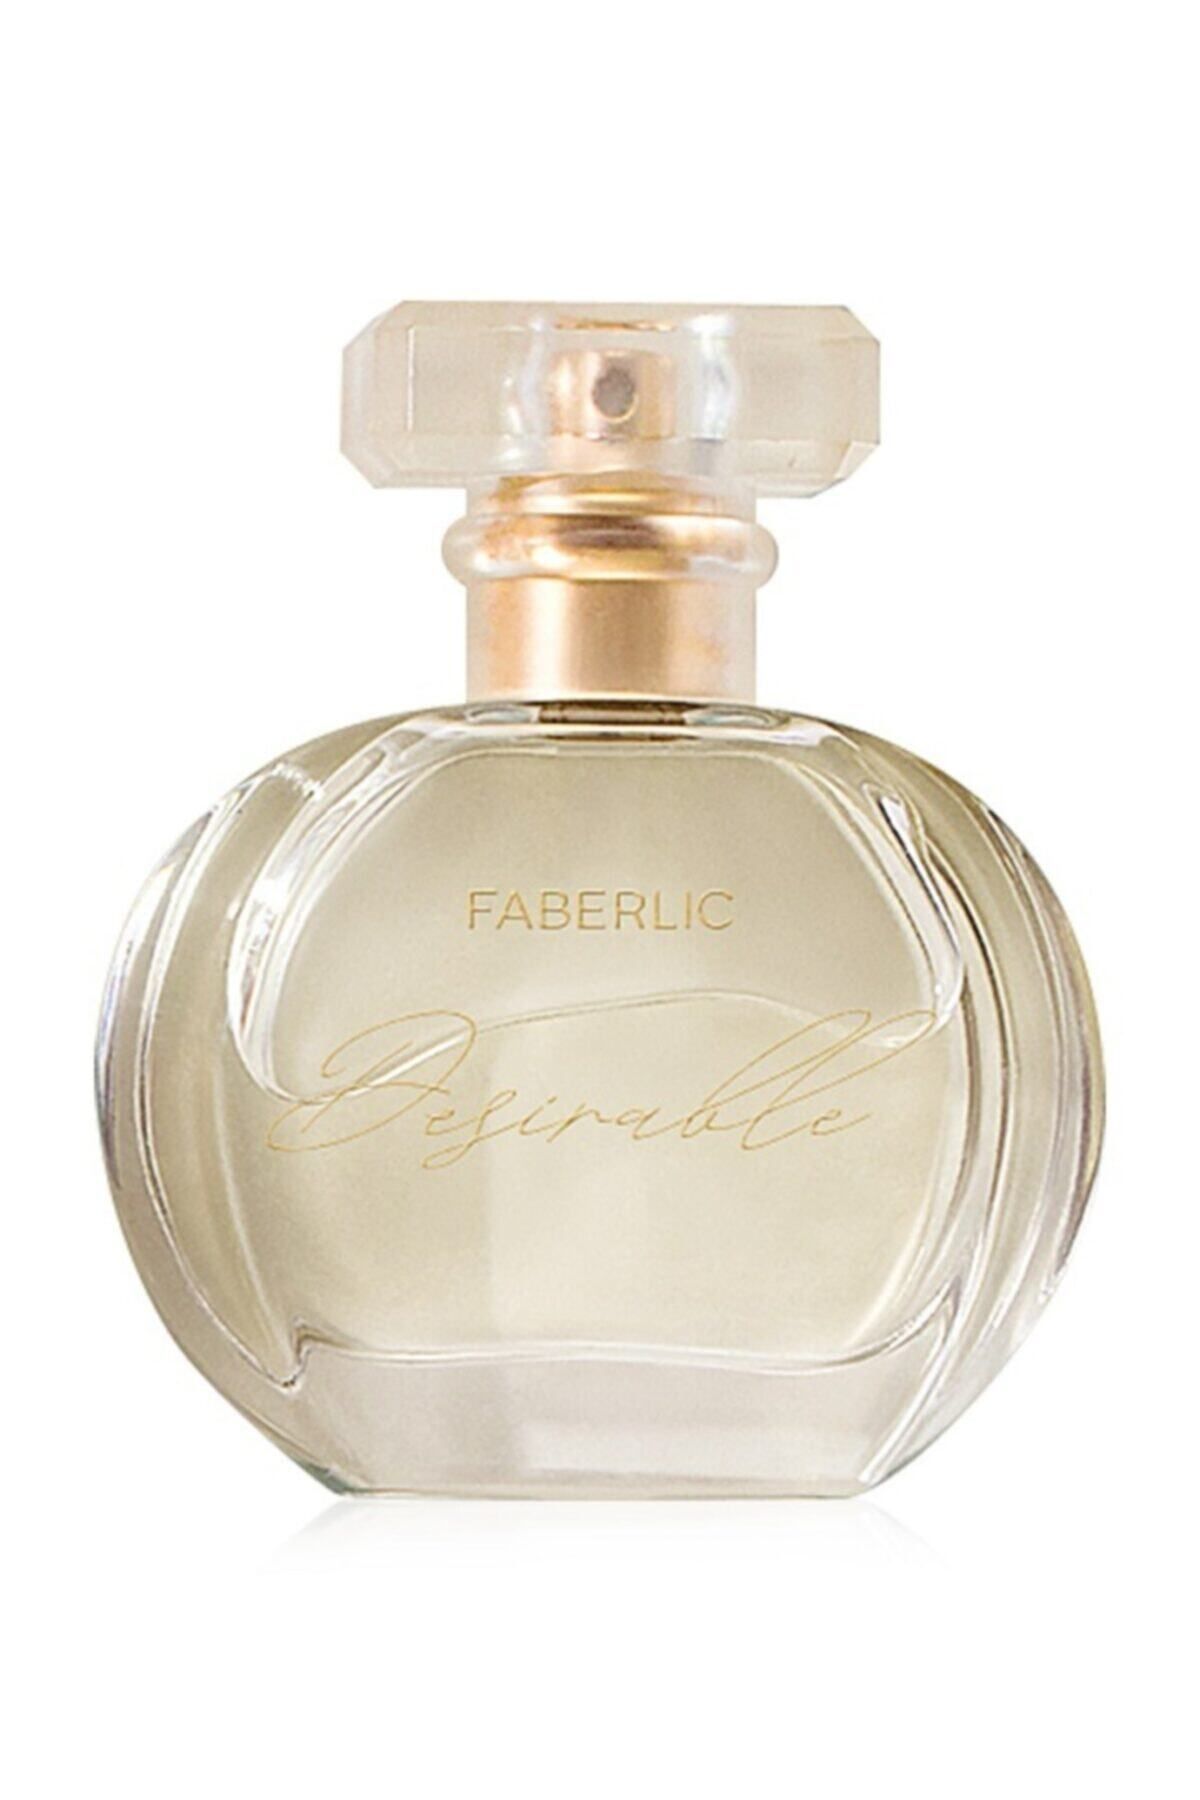 Faberlic Desırable Kadın Edp 30 ml